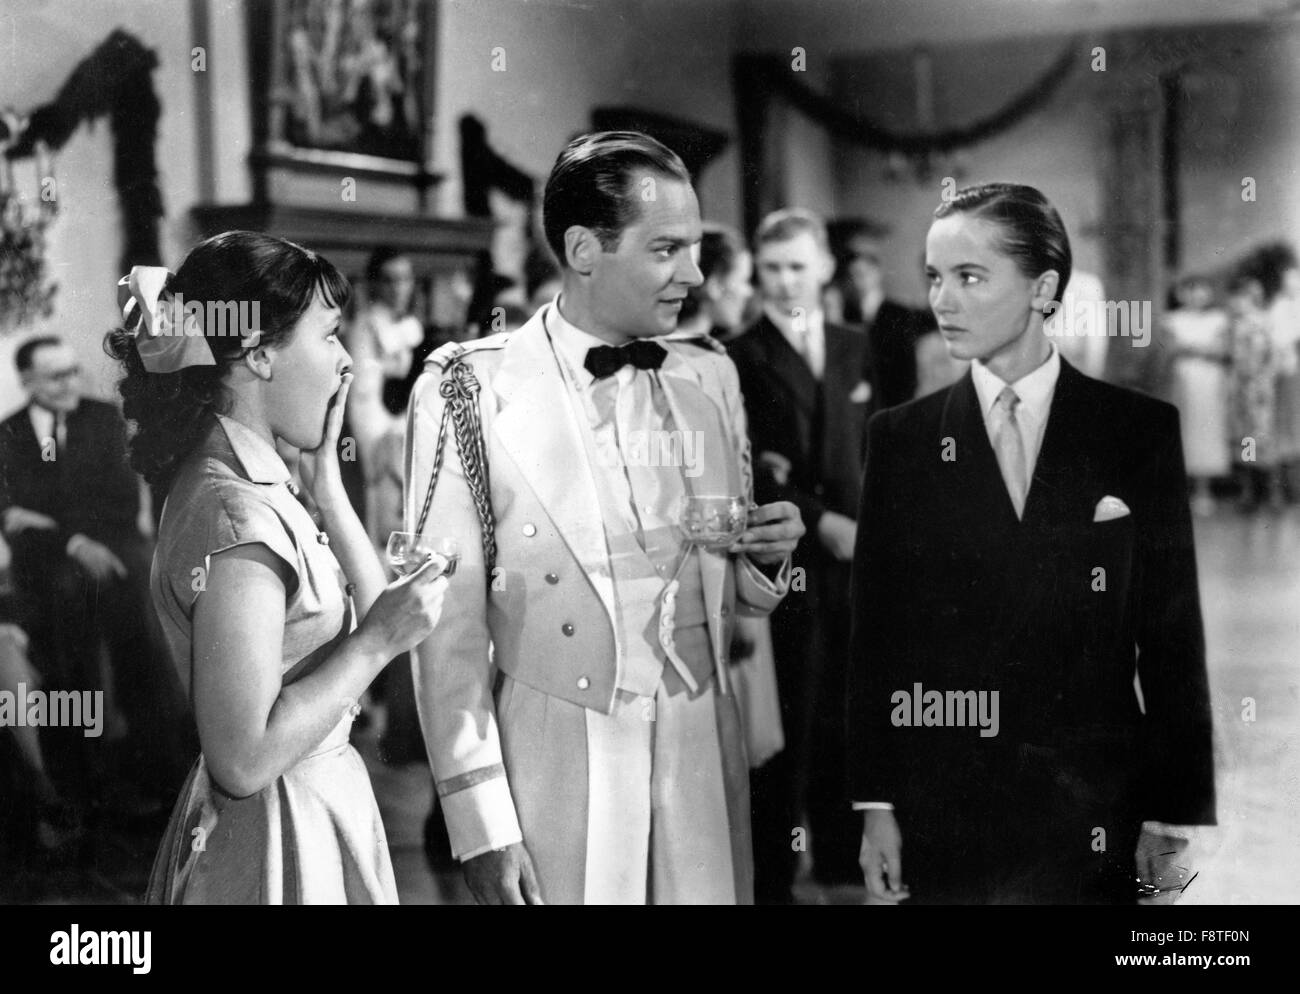 Fritz und Friederike, Deutschland 1952, Regie: Geza von Bolvary, Darsteller: Albert LIeven, Liselotte Pulver Stock Photo